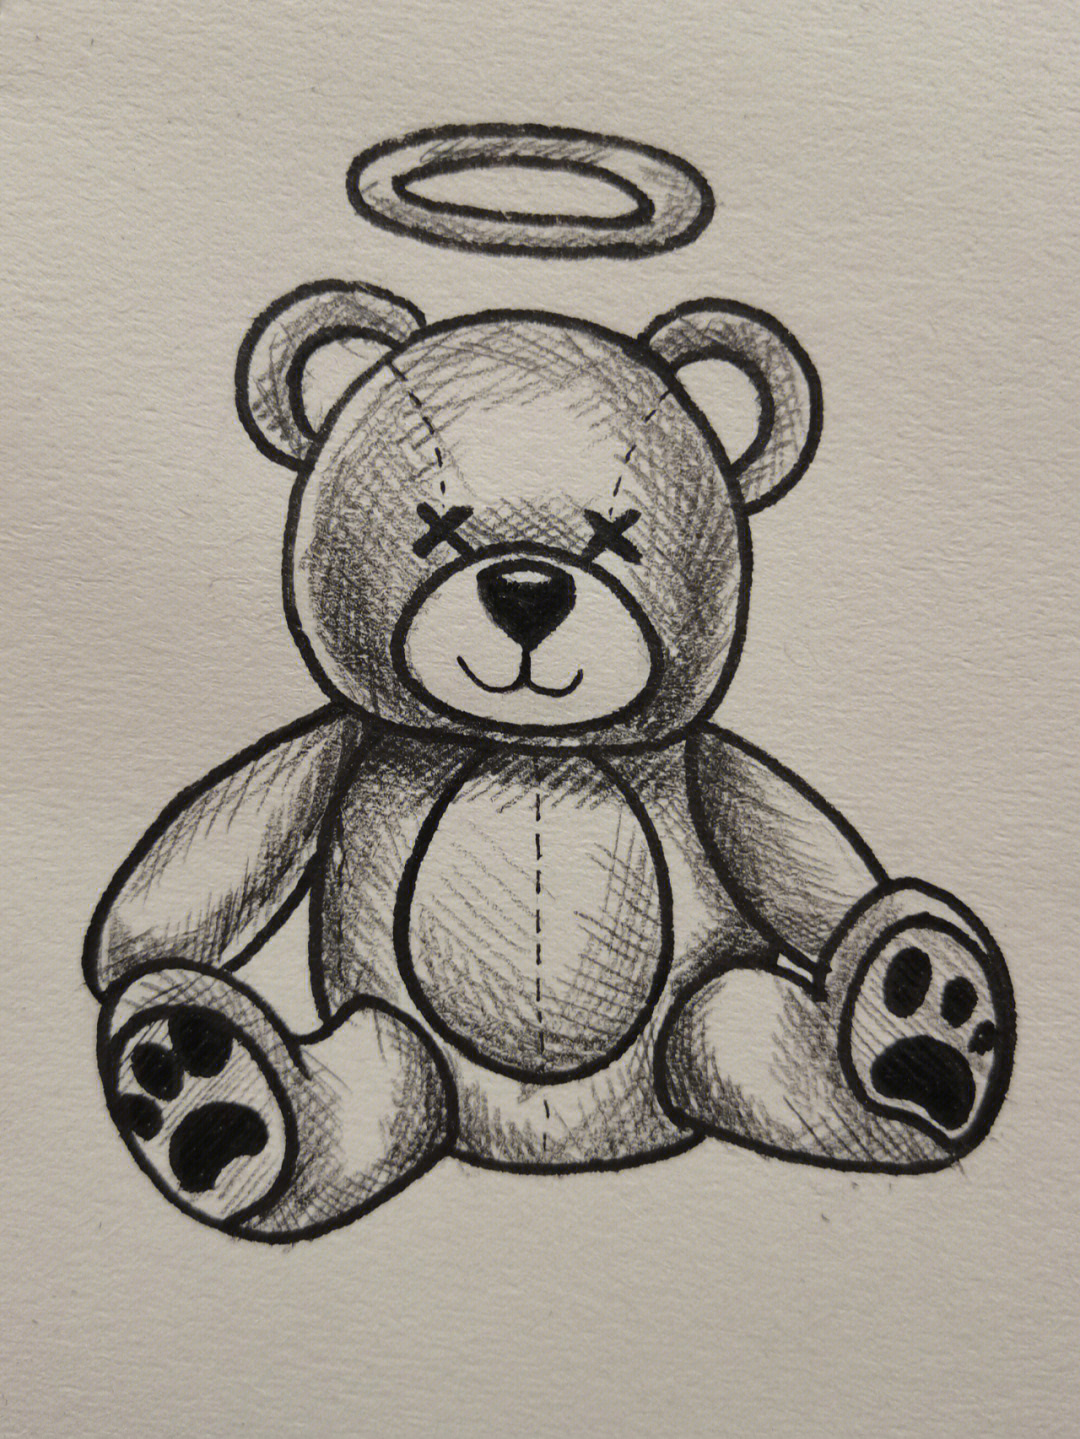 小熊玩偶素描画法图片